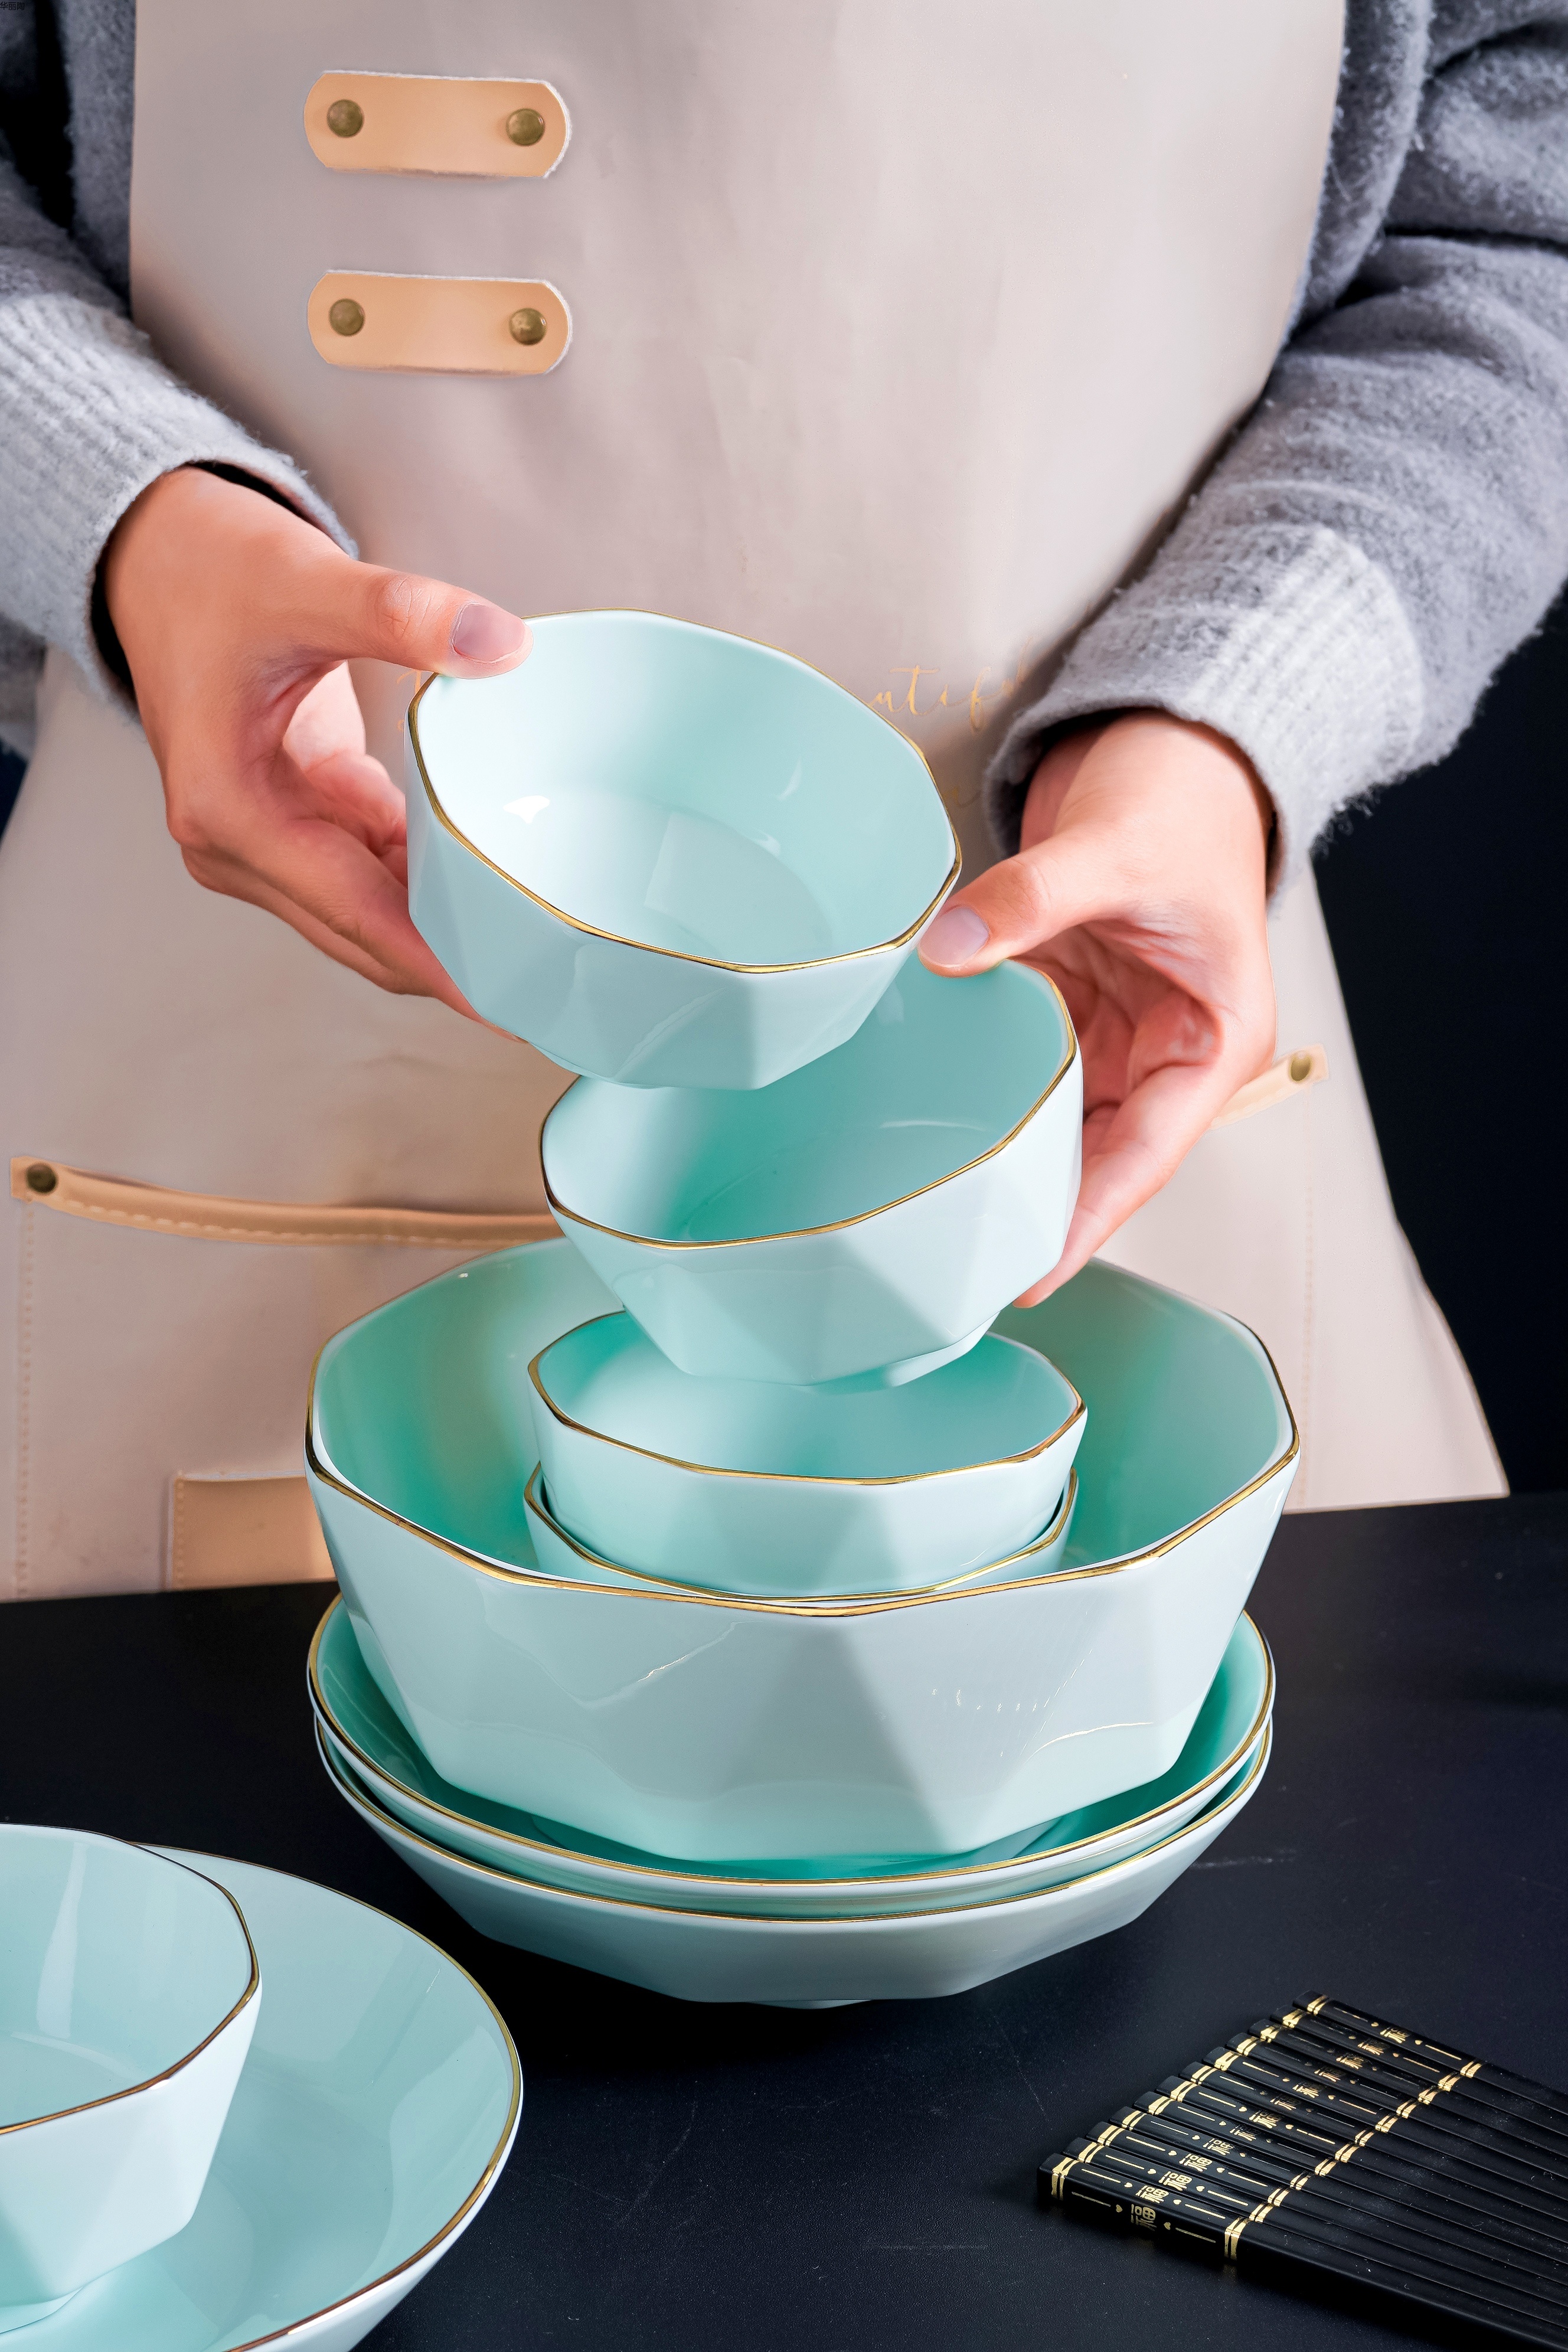 日式餐具日式碗陶瓷碗创意礼品陶瓷餐具礼品碗陶瓷碗盘中式餐具西式餐具详情54